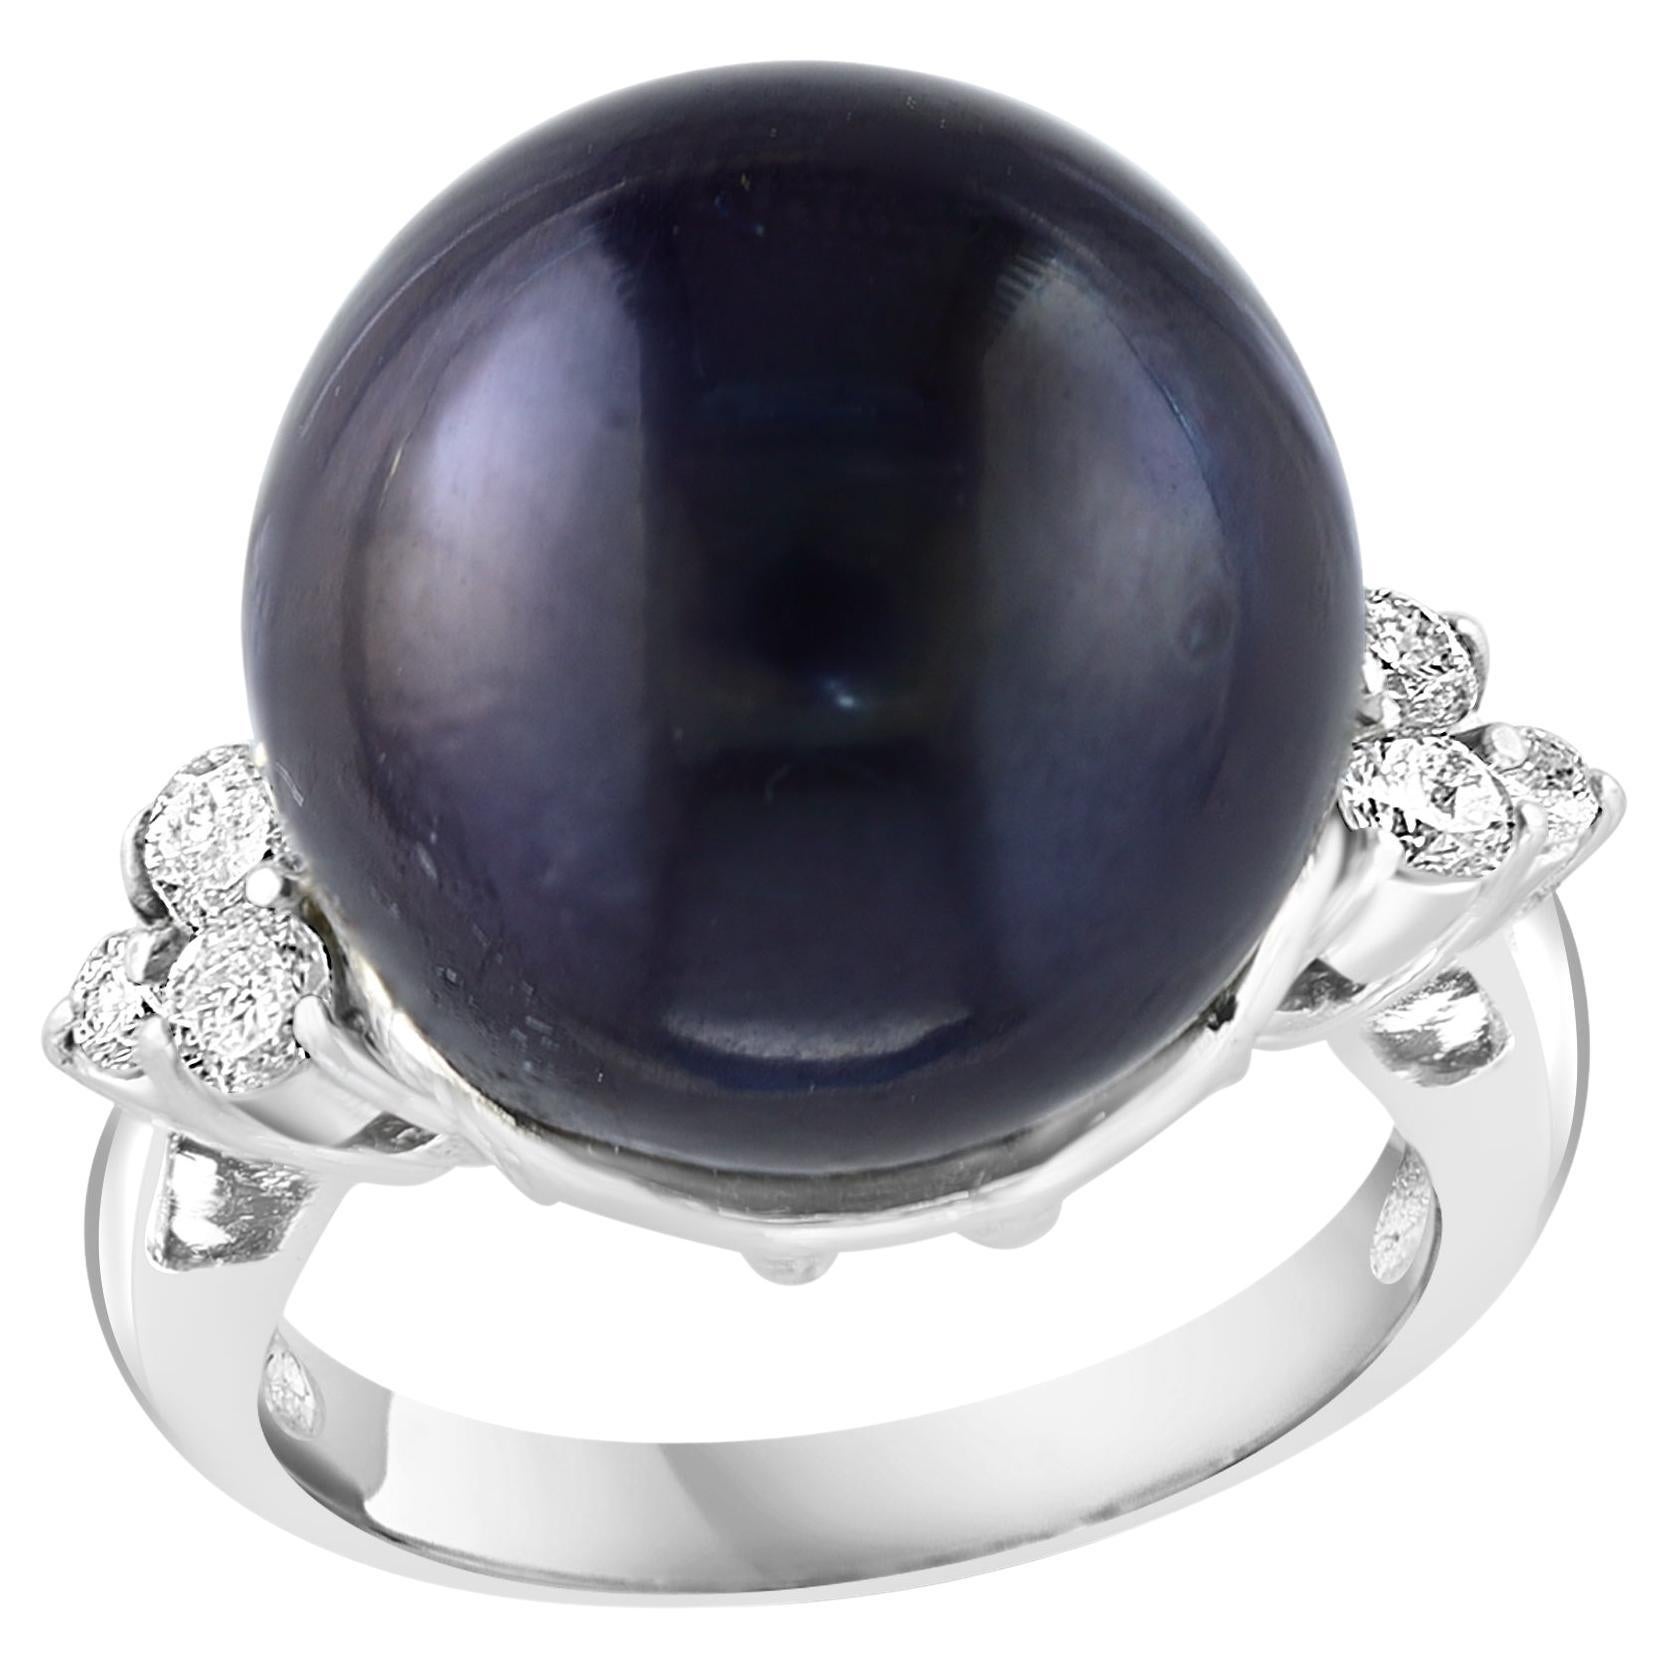 15MM  Tahiti ronde noire  Bague en platine avec perles et diamants, taille 5,5